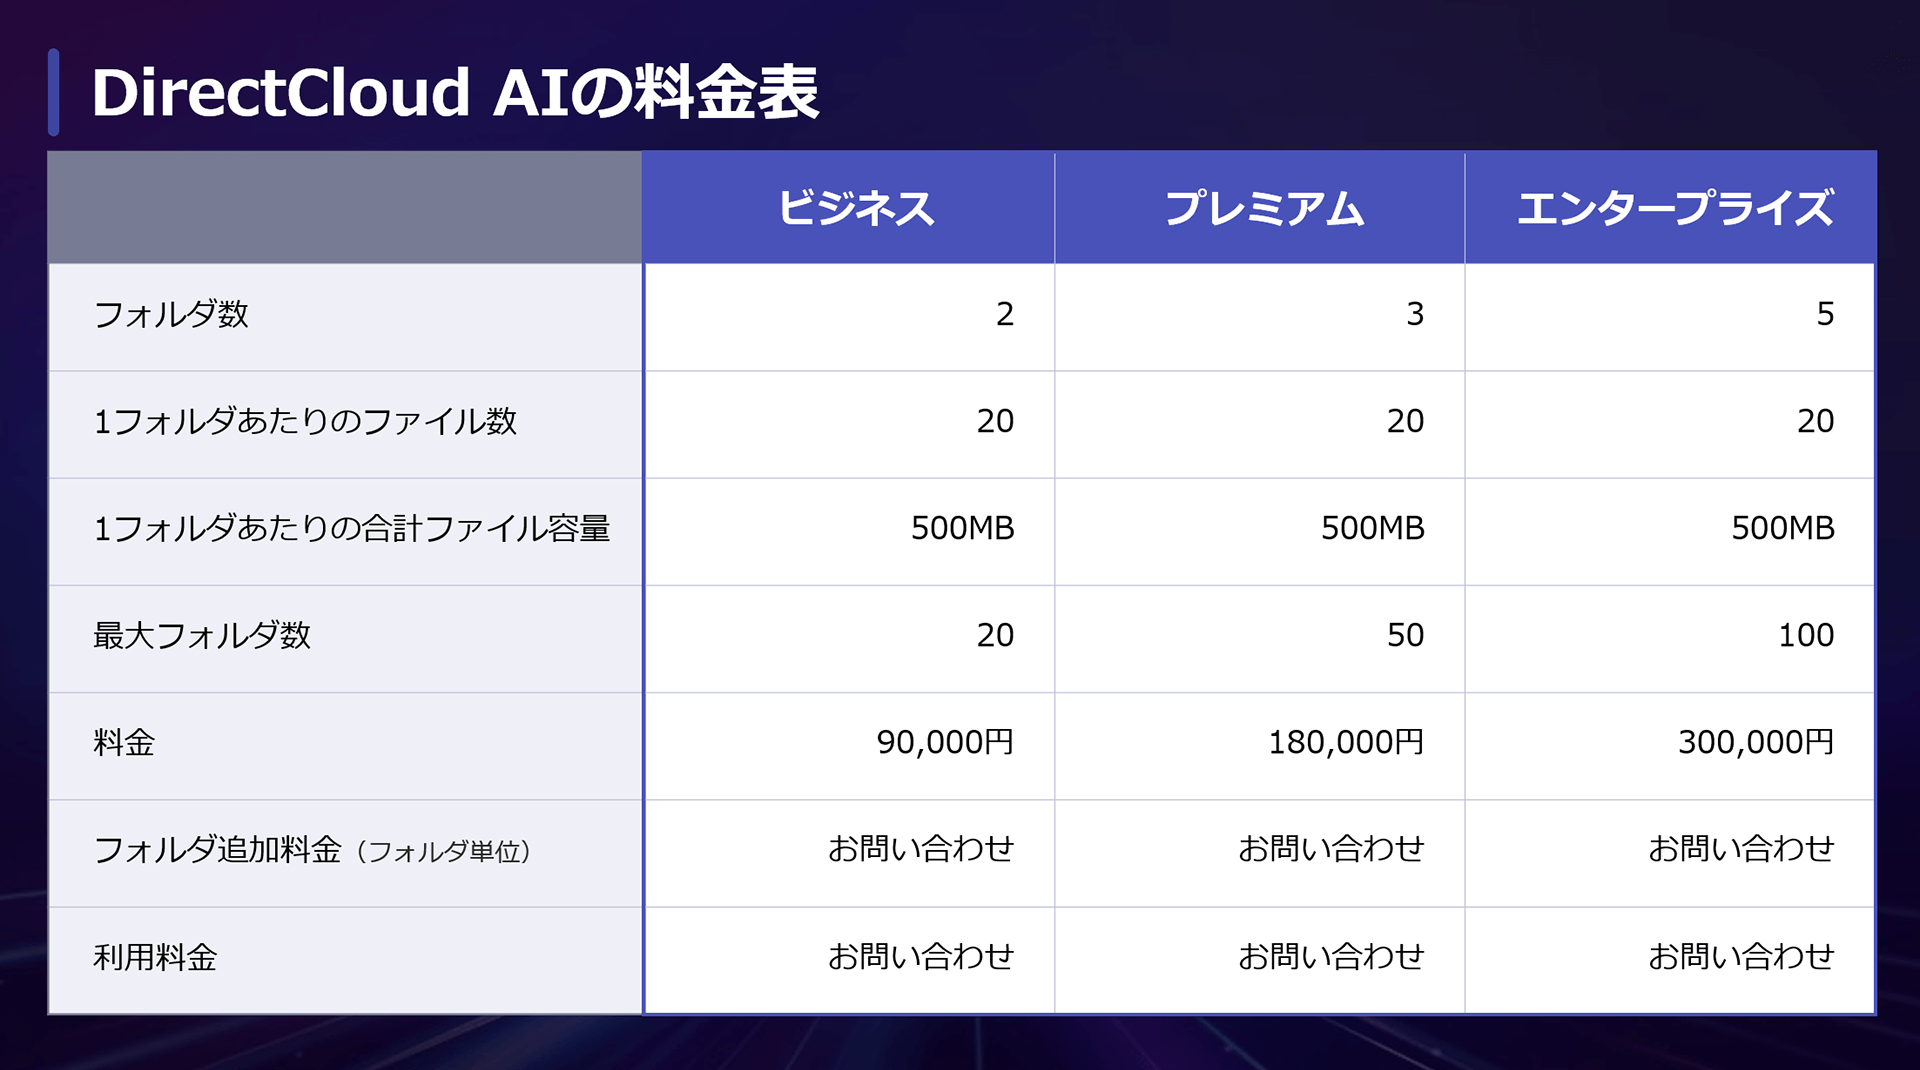 DirectCloud AI 料金表